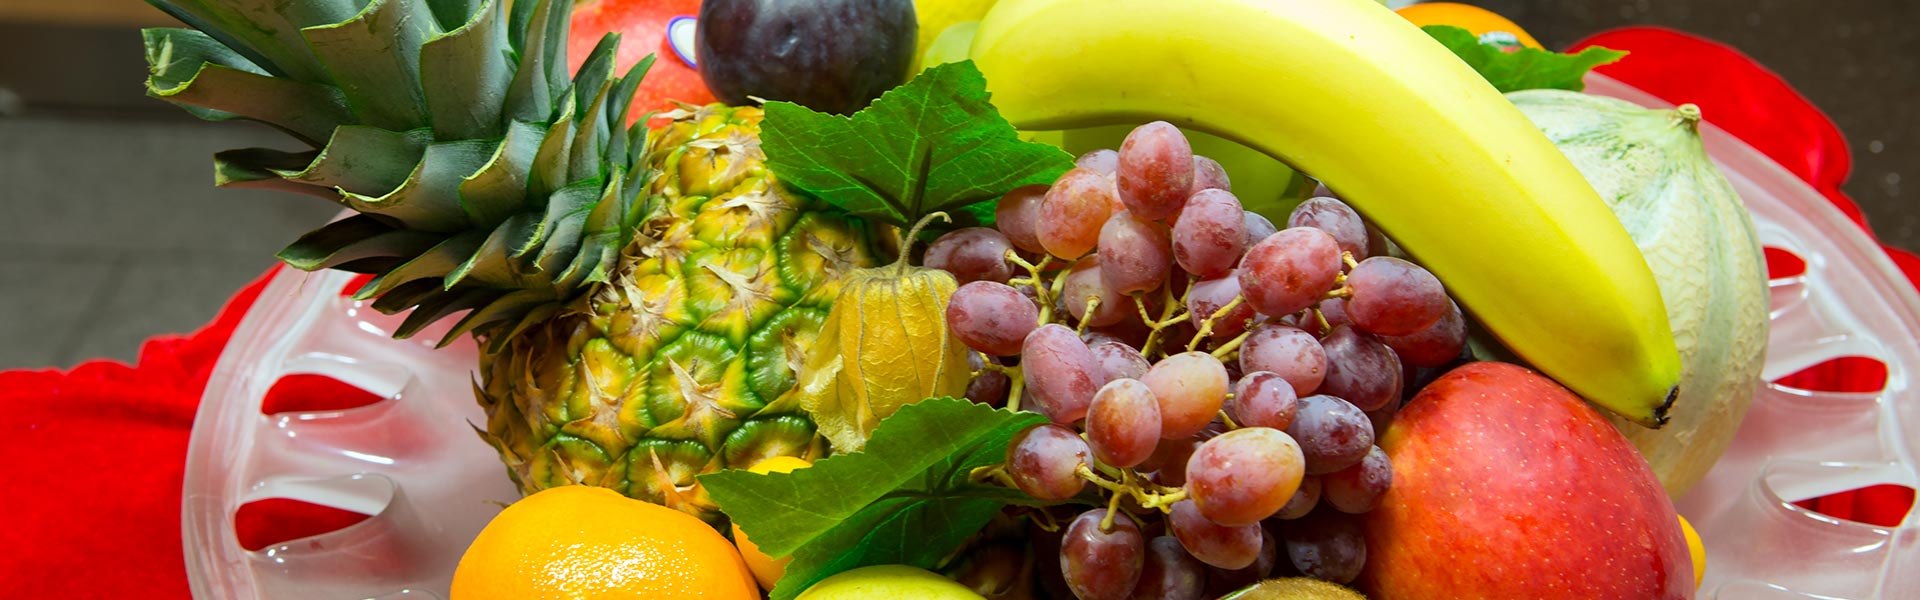 Sortiment Obst und Gemüse